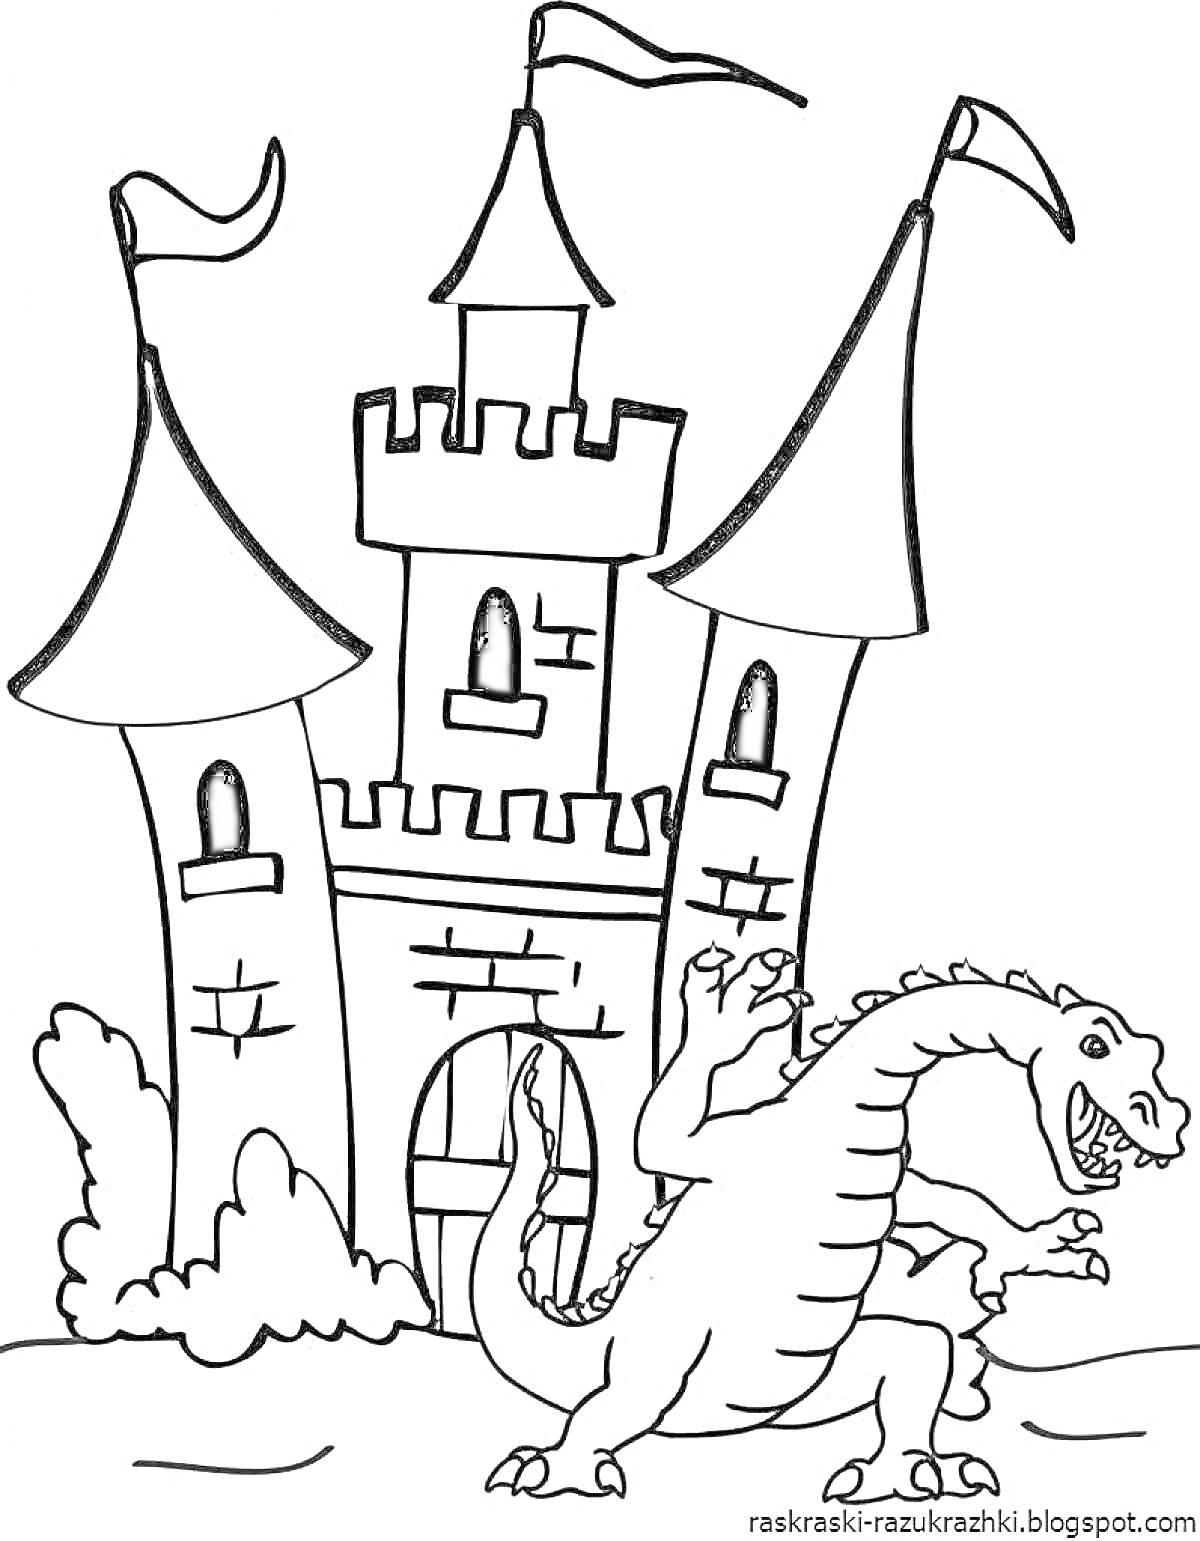 Раскраска Замок с двумя башнями и драконом перед ними